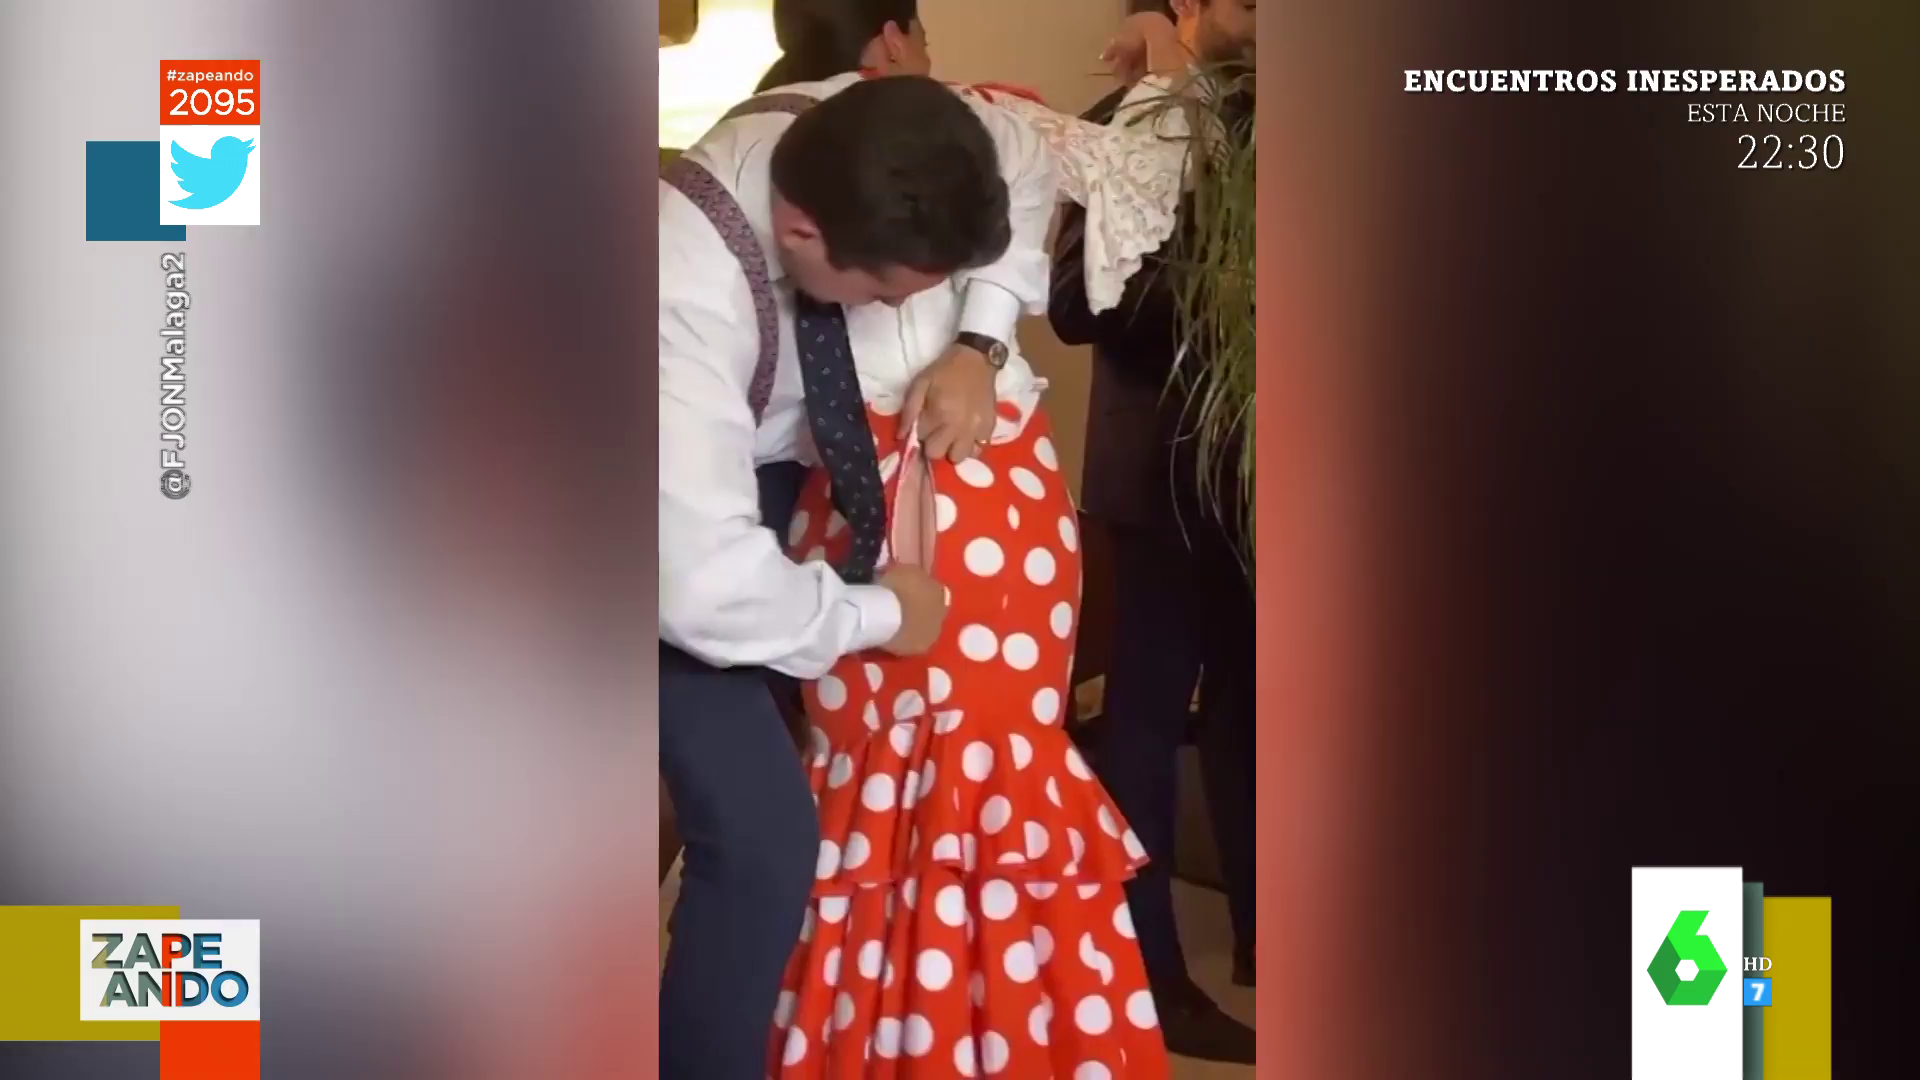 La desesperación viral de un hombre al intentar subir la cremallera del vestido de flamenca a una mujer a la altura del culo imagen